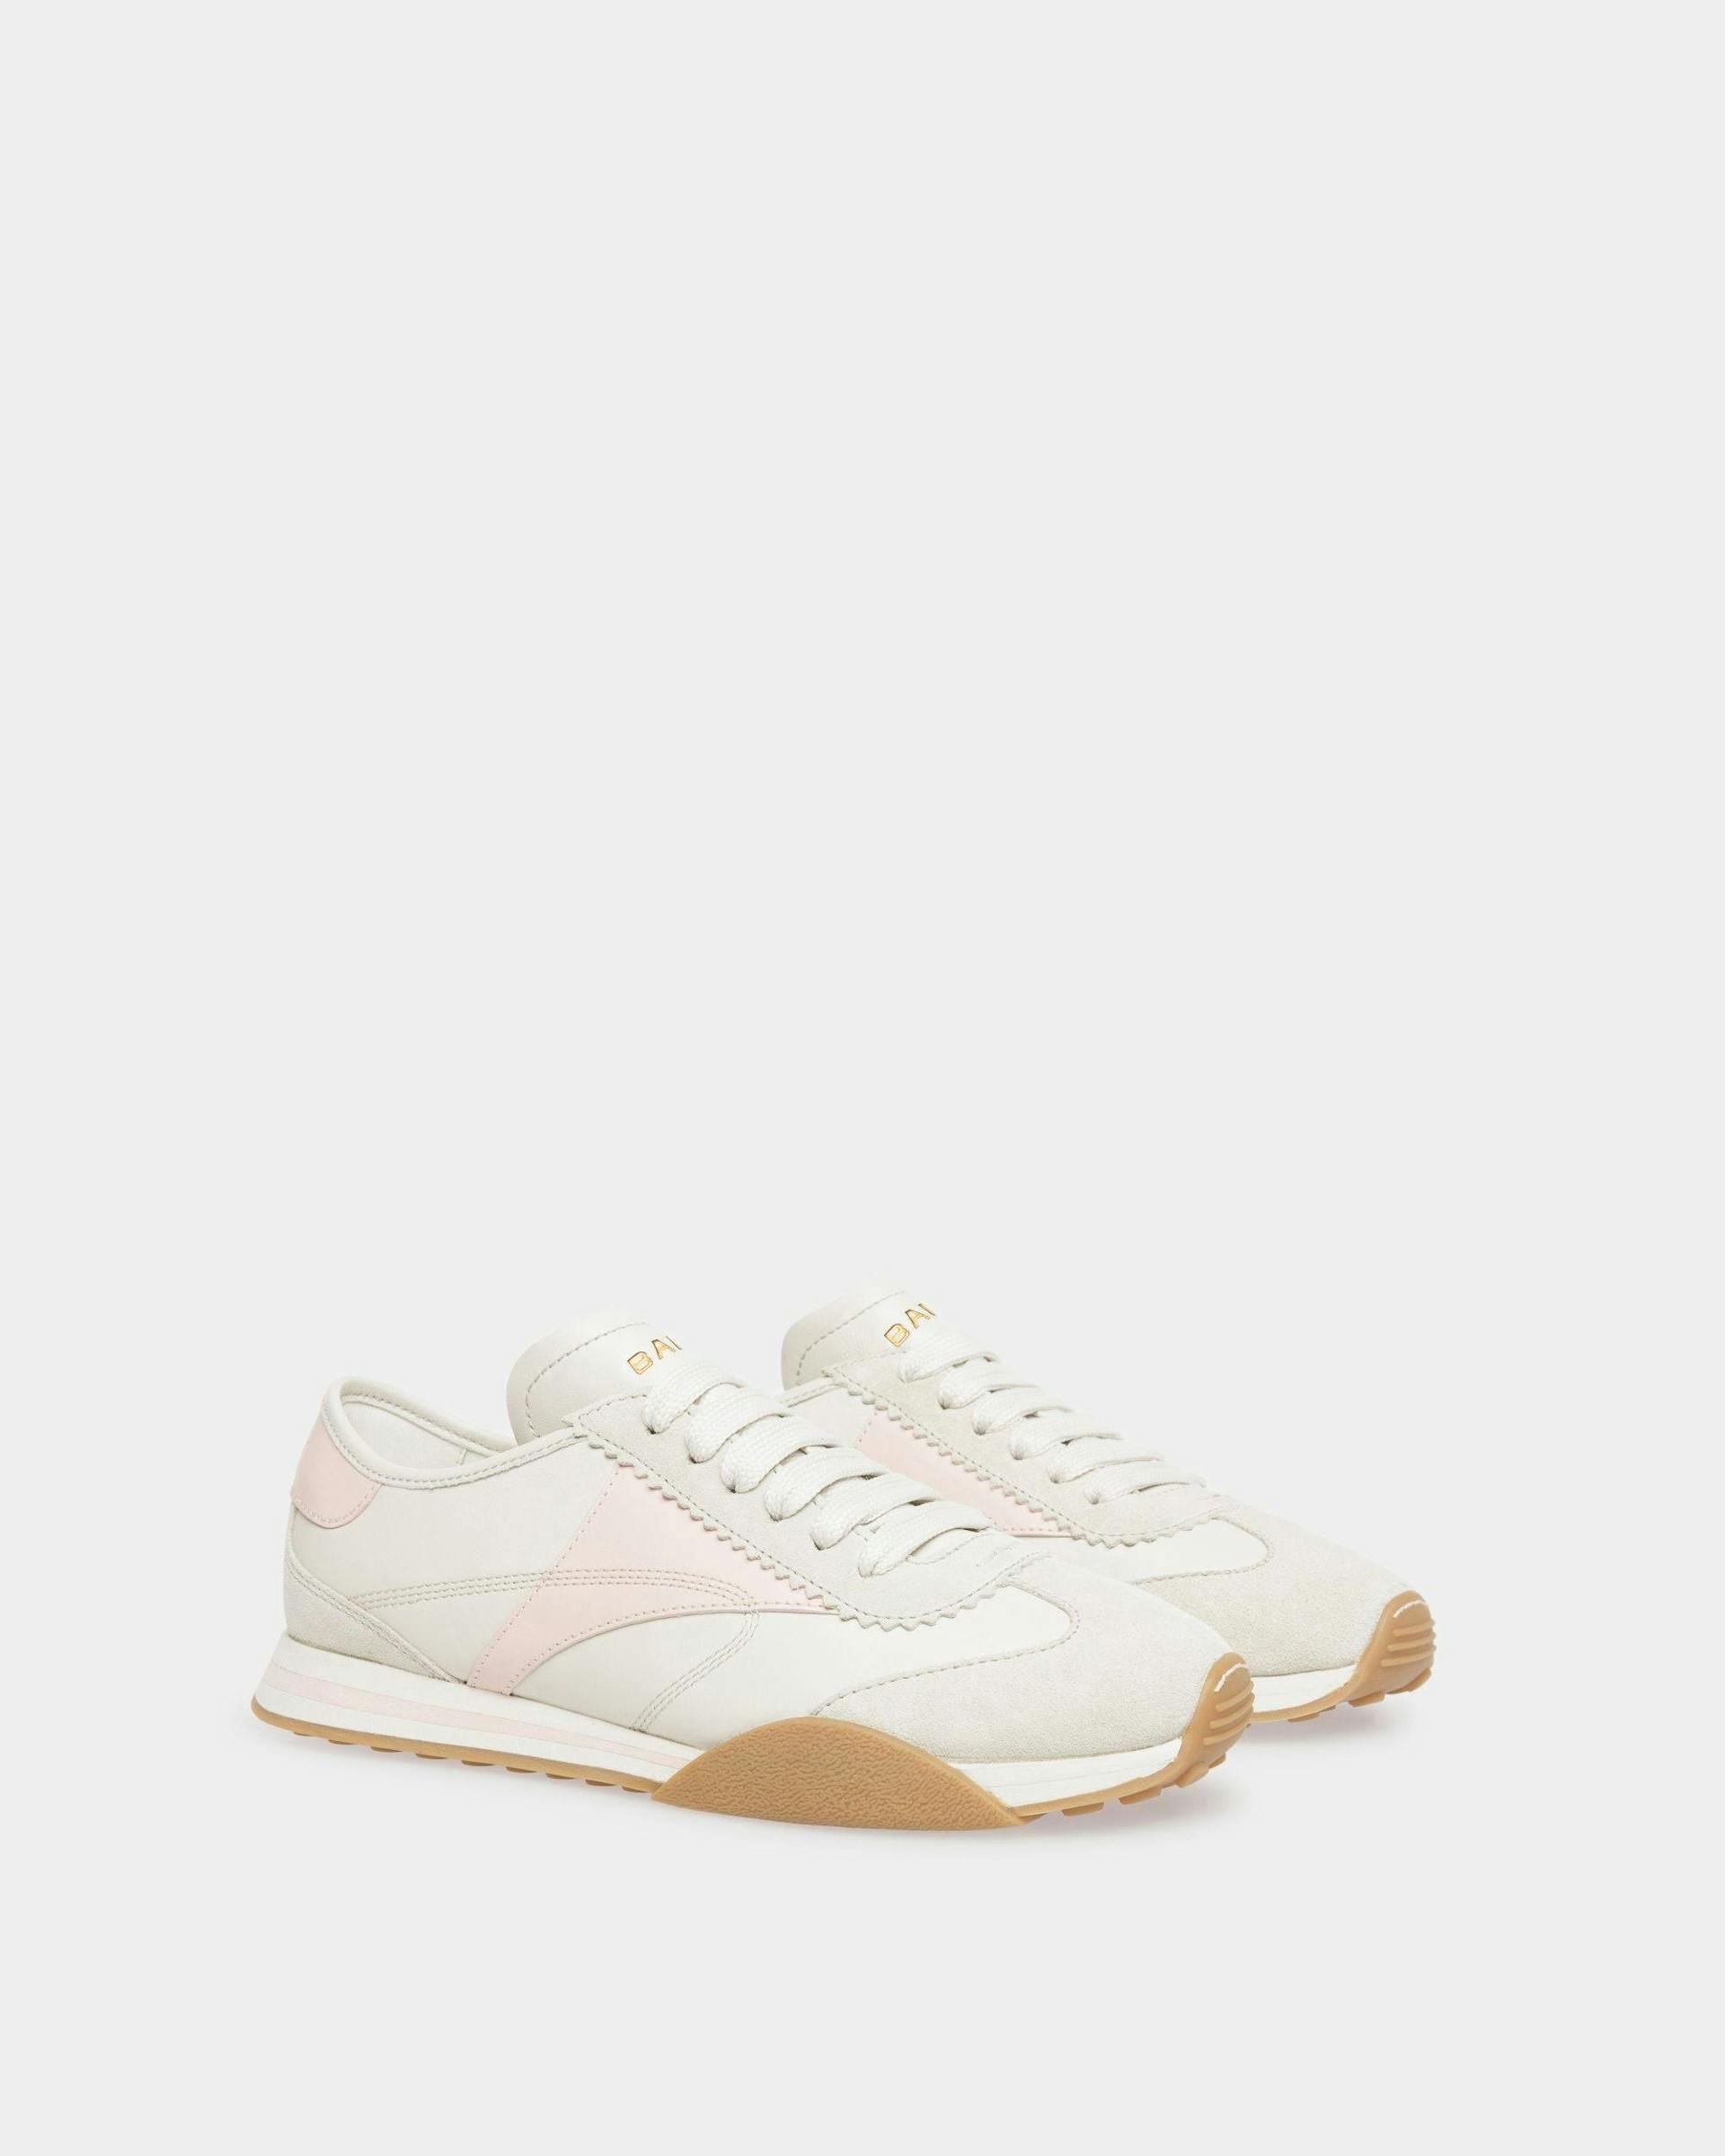 Sneakers Sussex En cuir blanc poussière et rose - Femme - Bally - 02